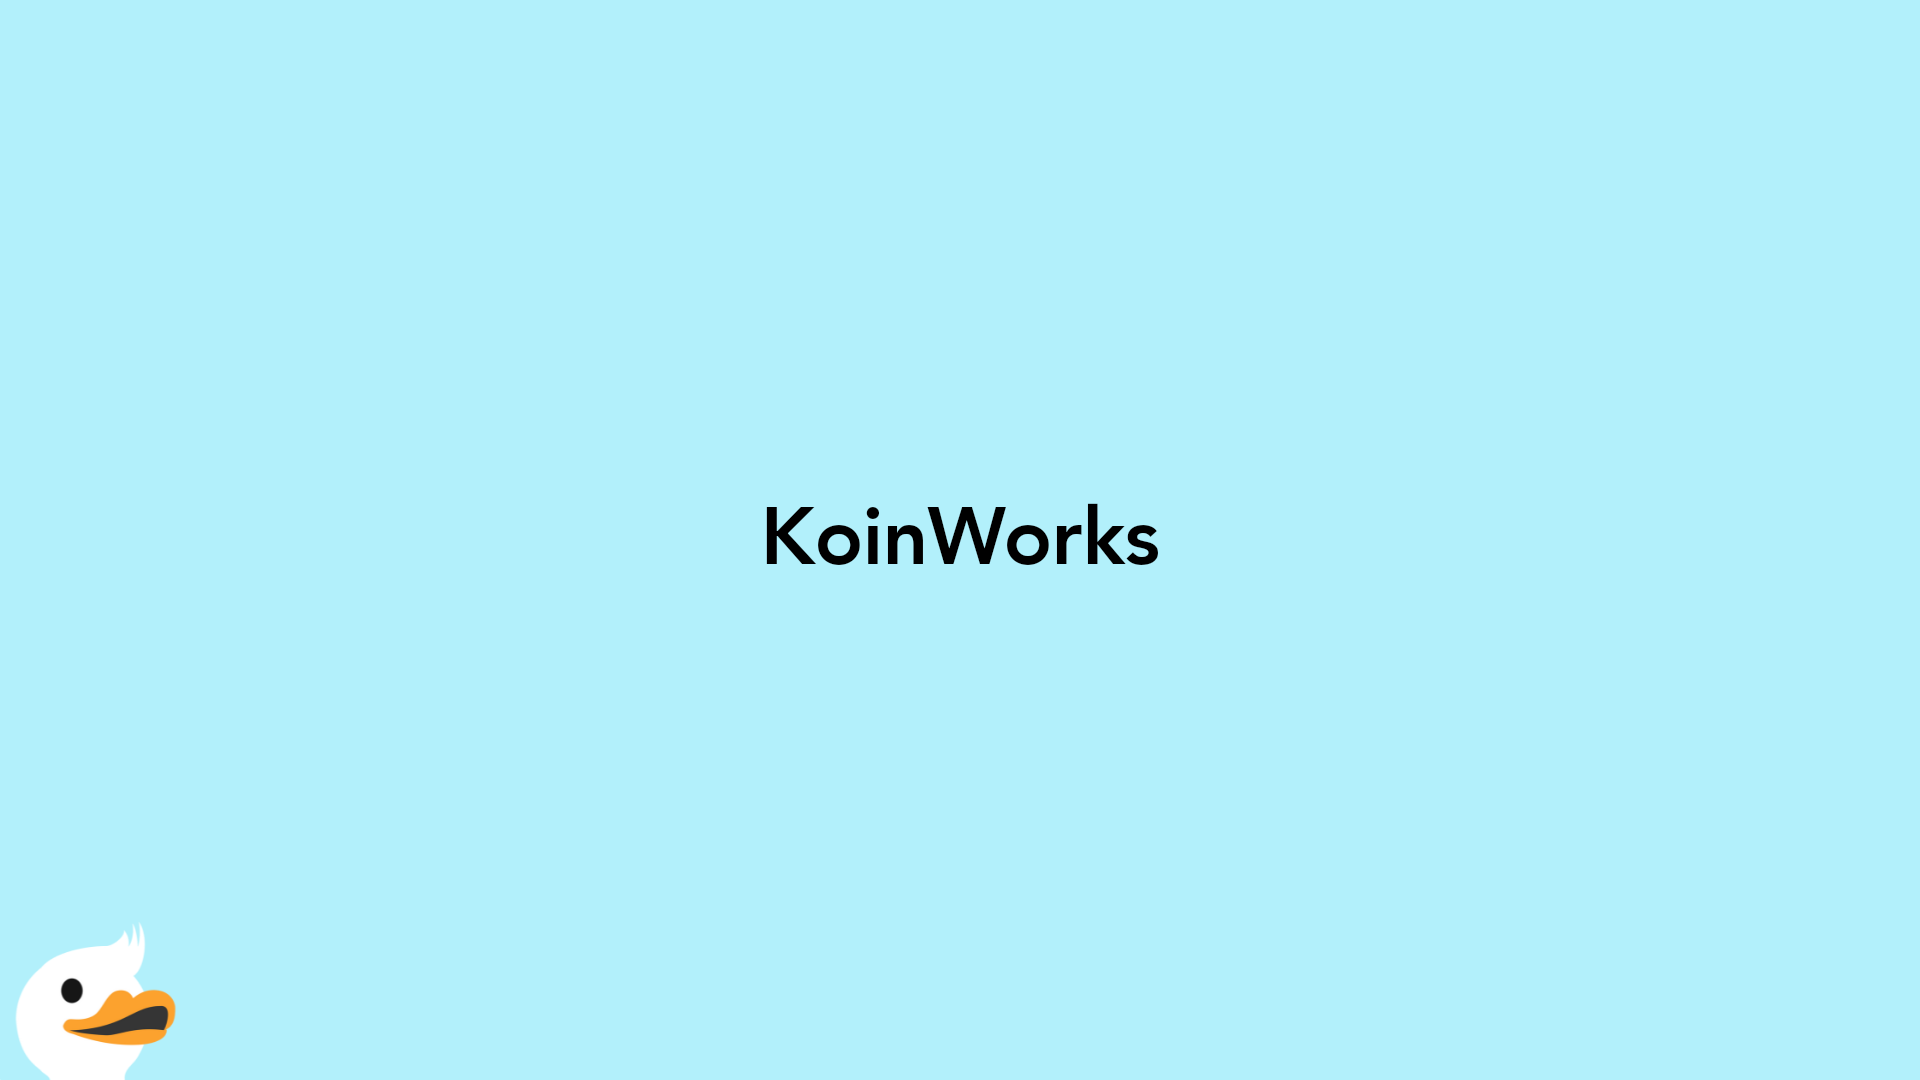 KoinWorks